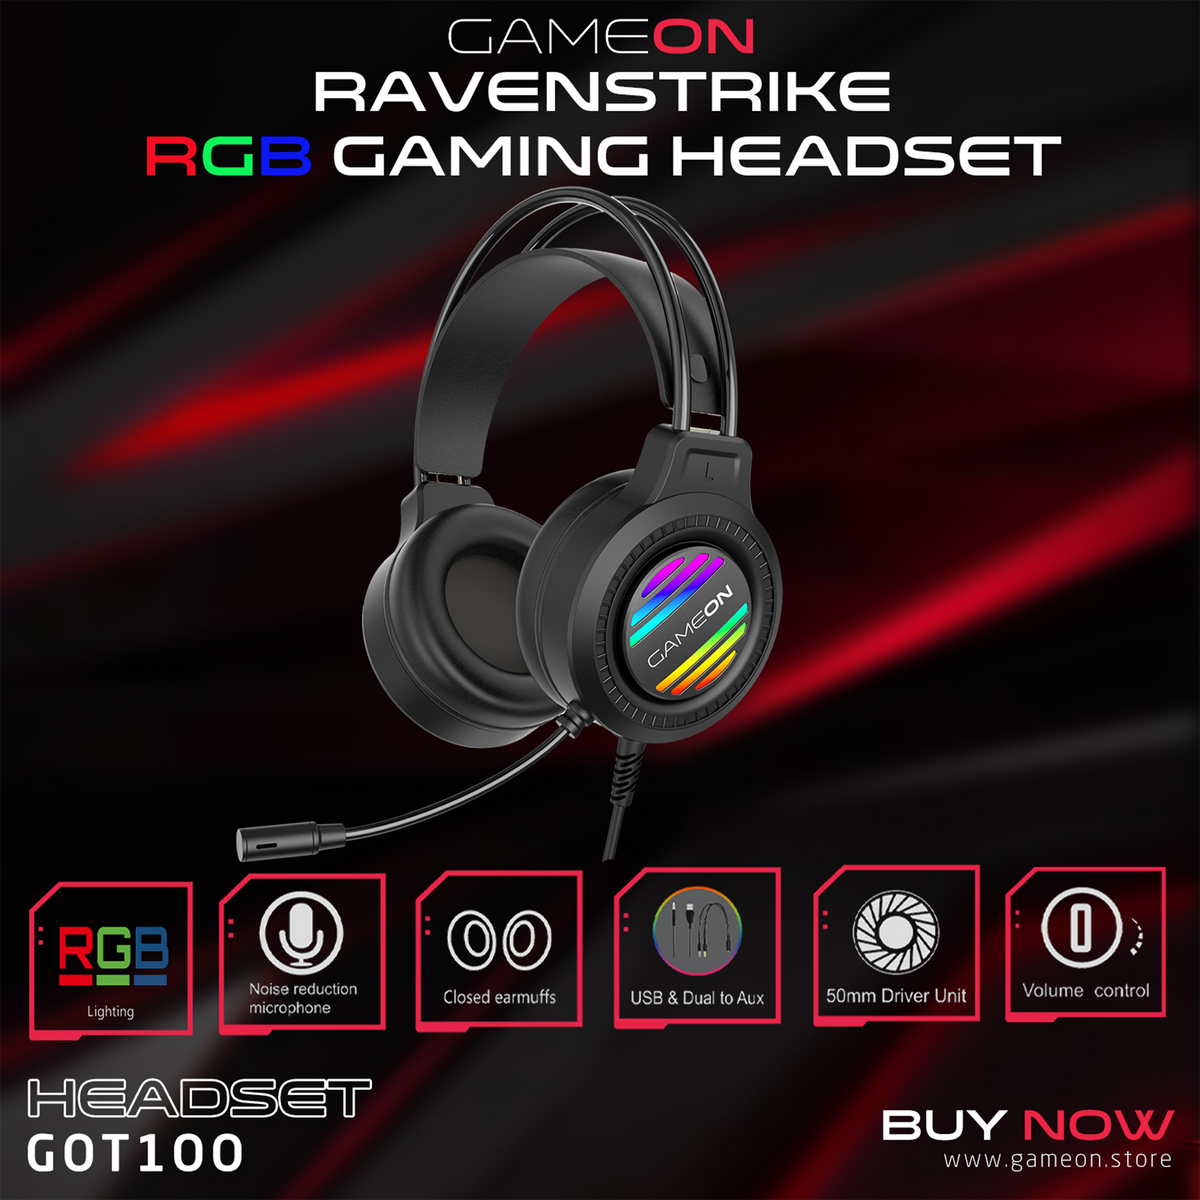 GAMEON GOT100 Ravenstrike RGB Gaming Headset - Black